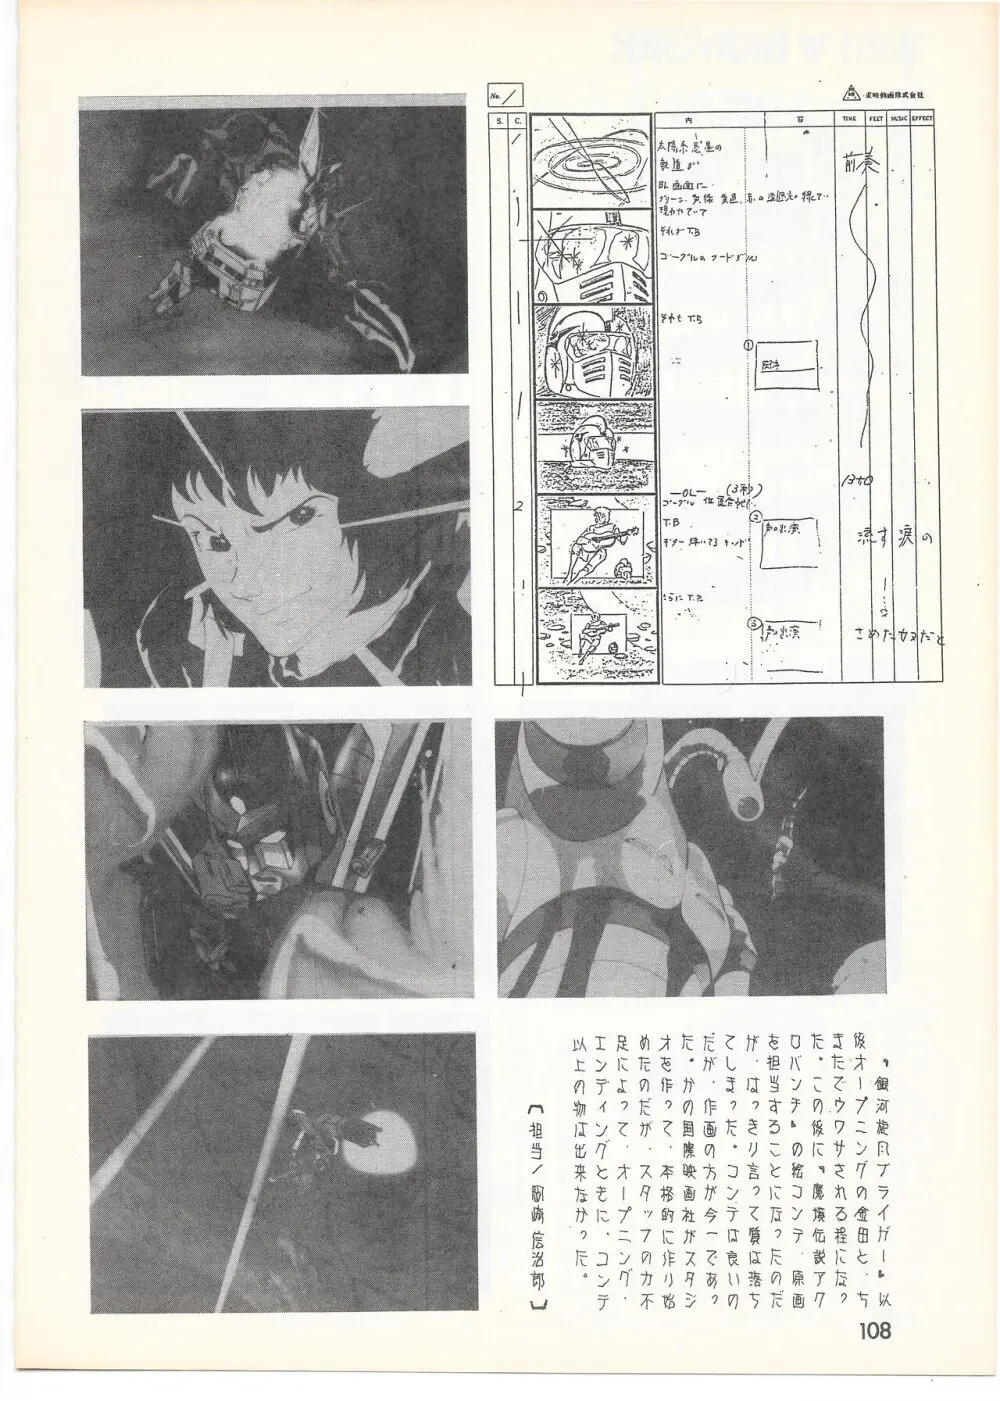 THE ANIMATOR 1 金田伊功特集号 103ページ